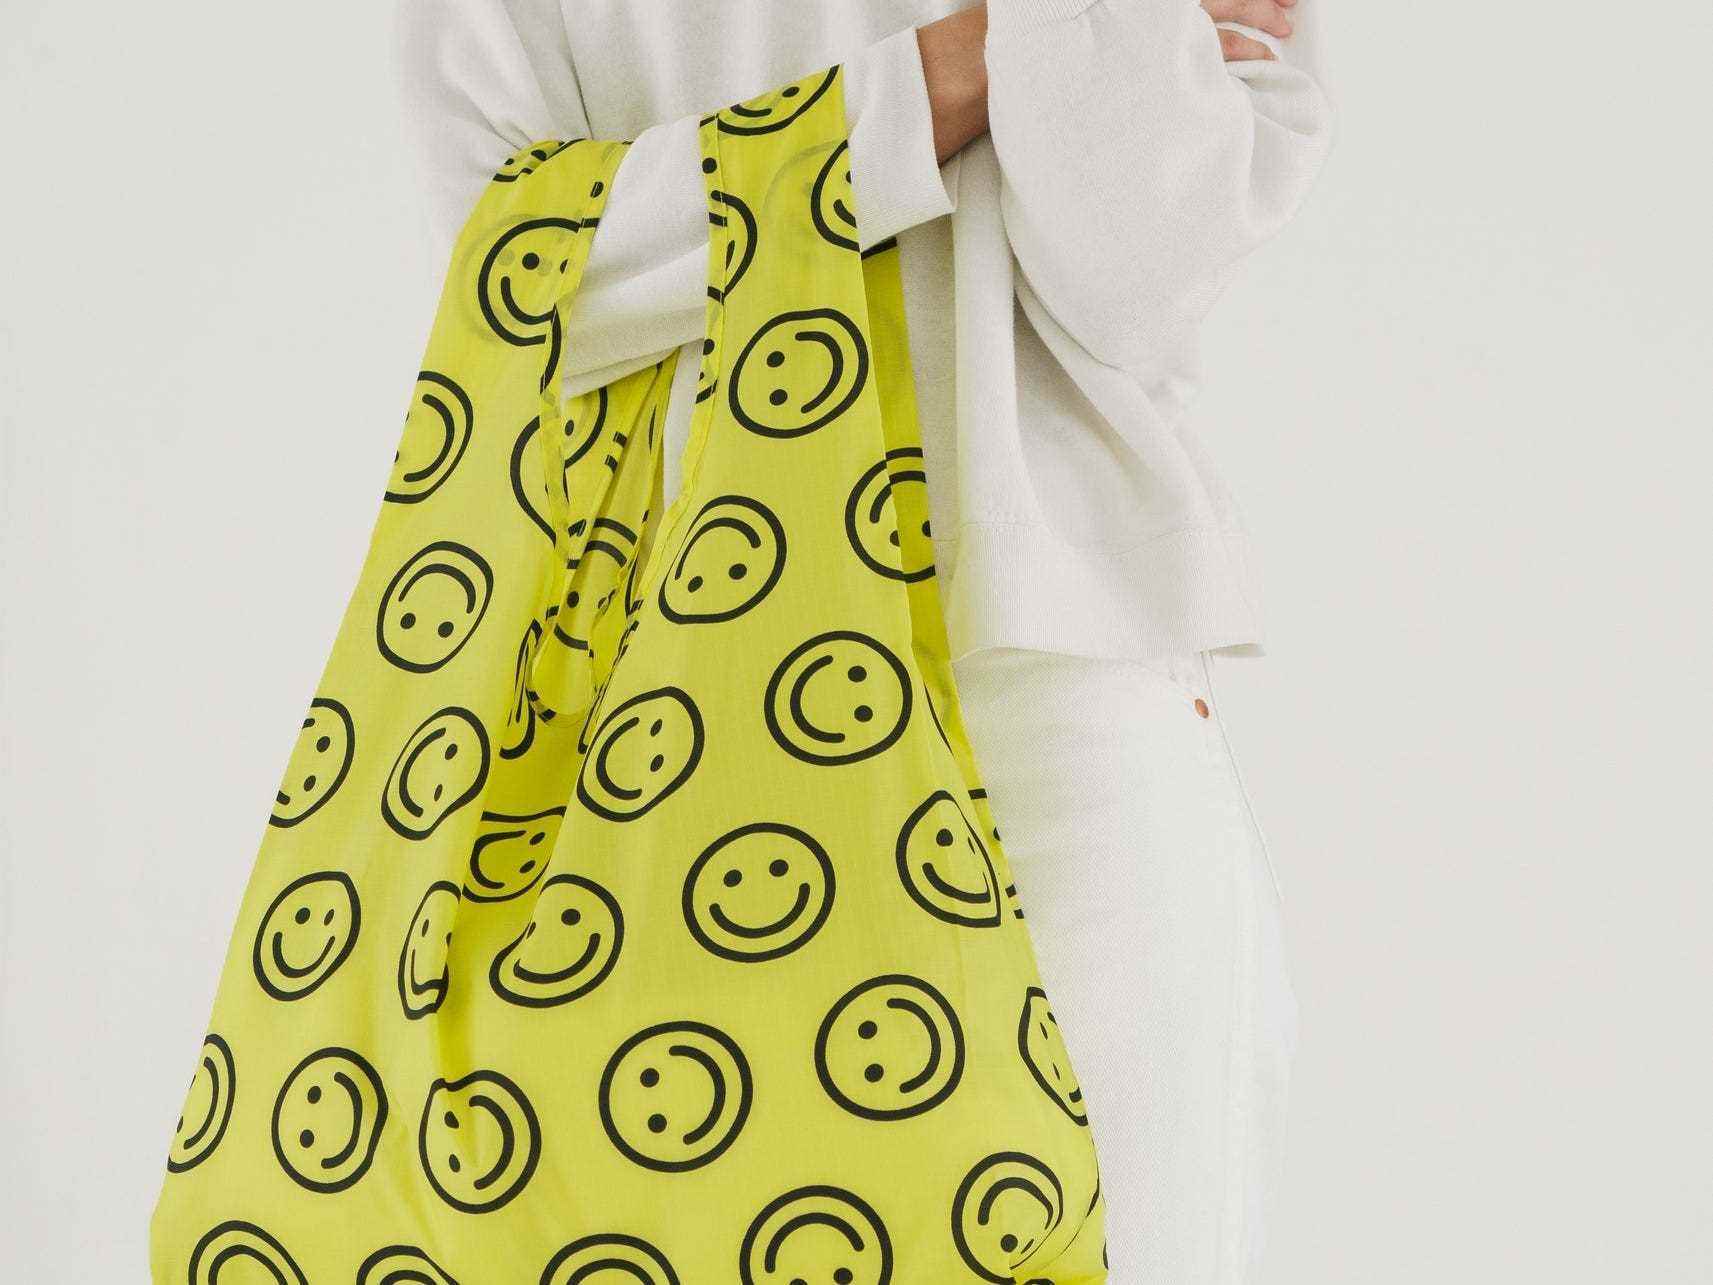 Eine gelbe Einkaufstasche mit Smileys.